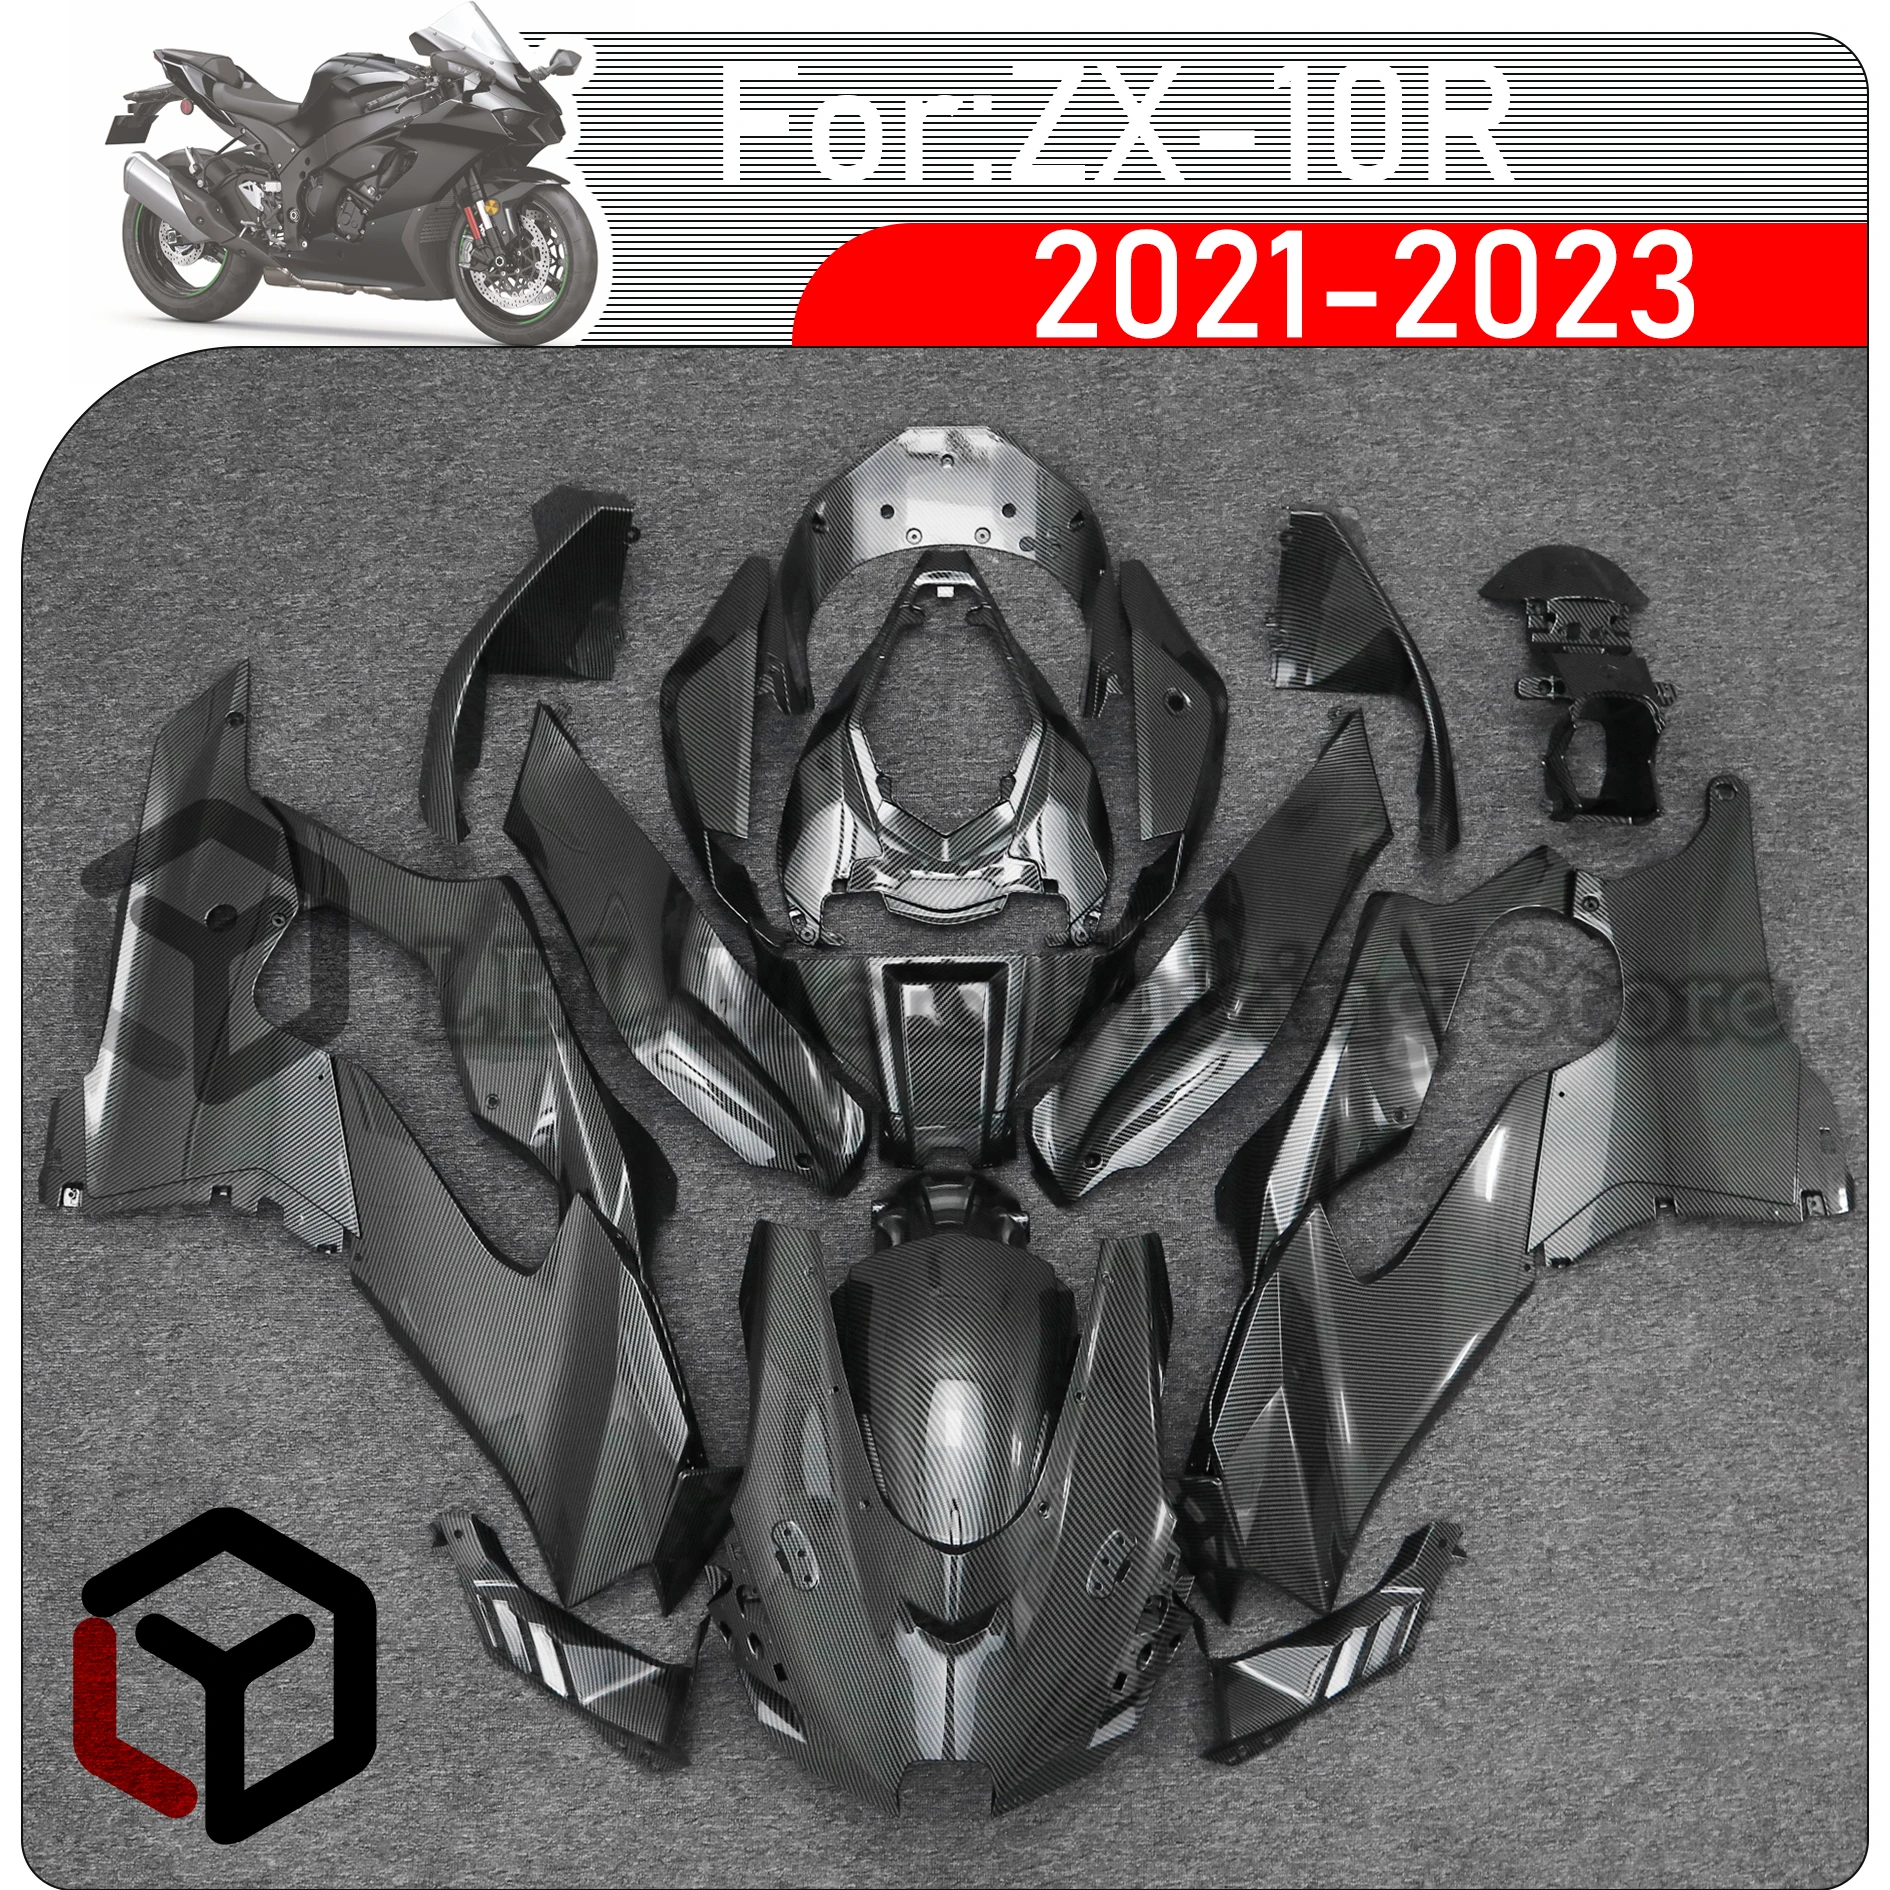 

Комплект обтекателей для мотоцикла, подходит для KAWASAKI ZX10R ZX-10R ZX 10R 2021 2022 2023, кузов из высококачественного АБС-пластика, полный обтекатель